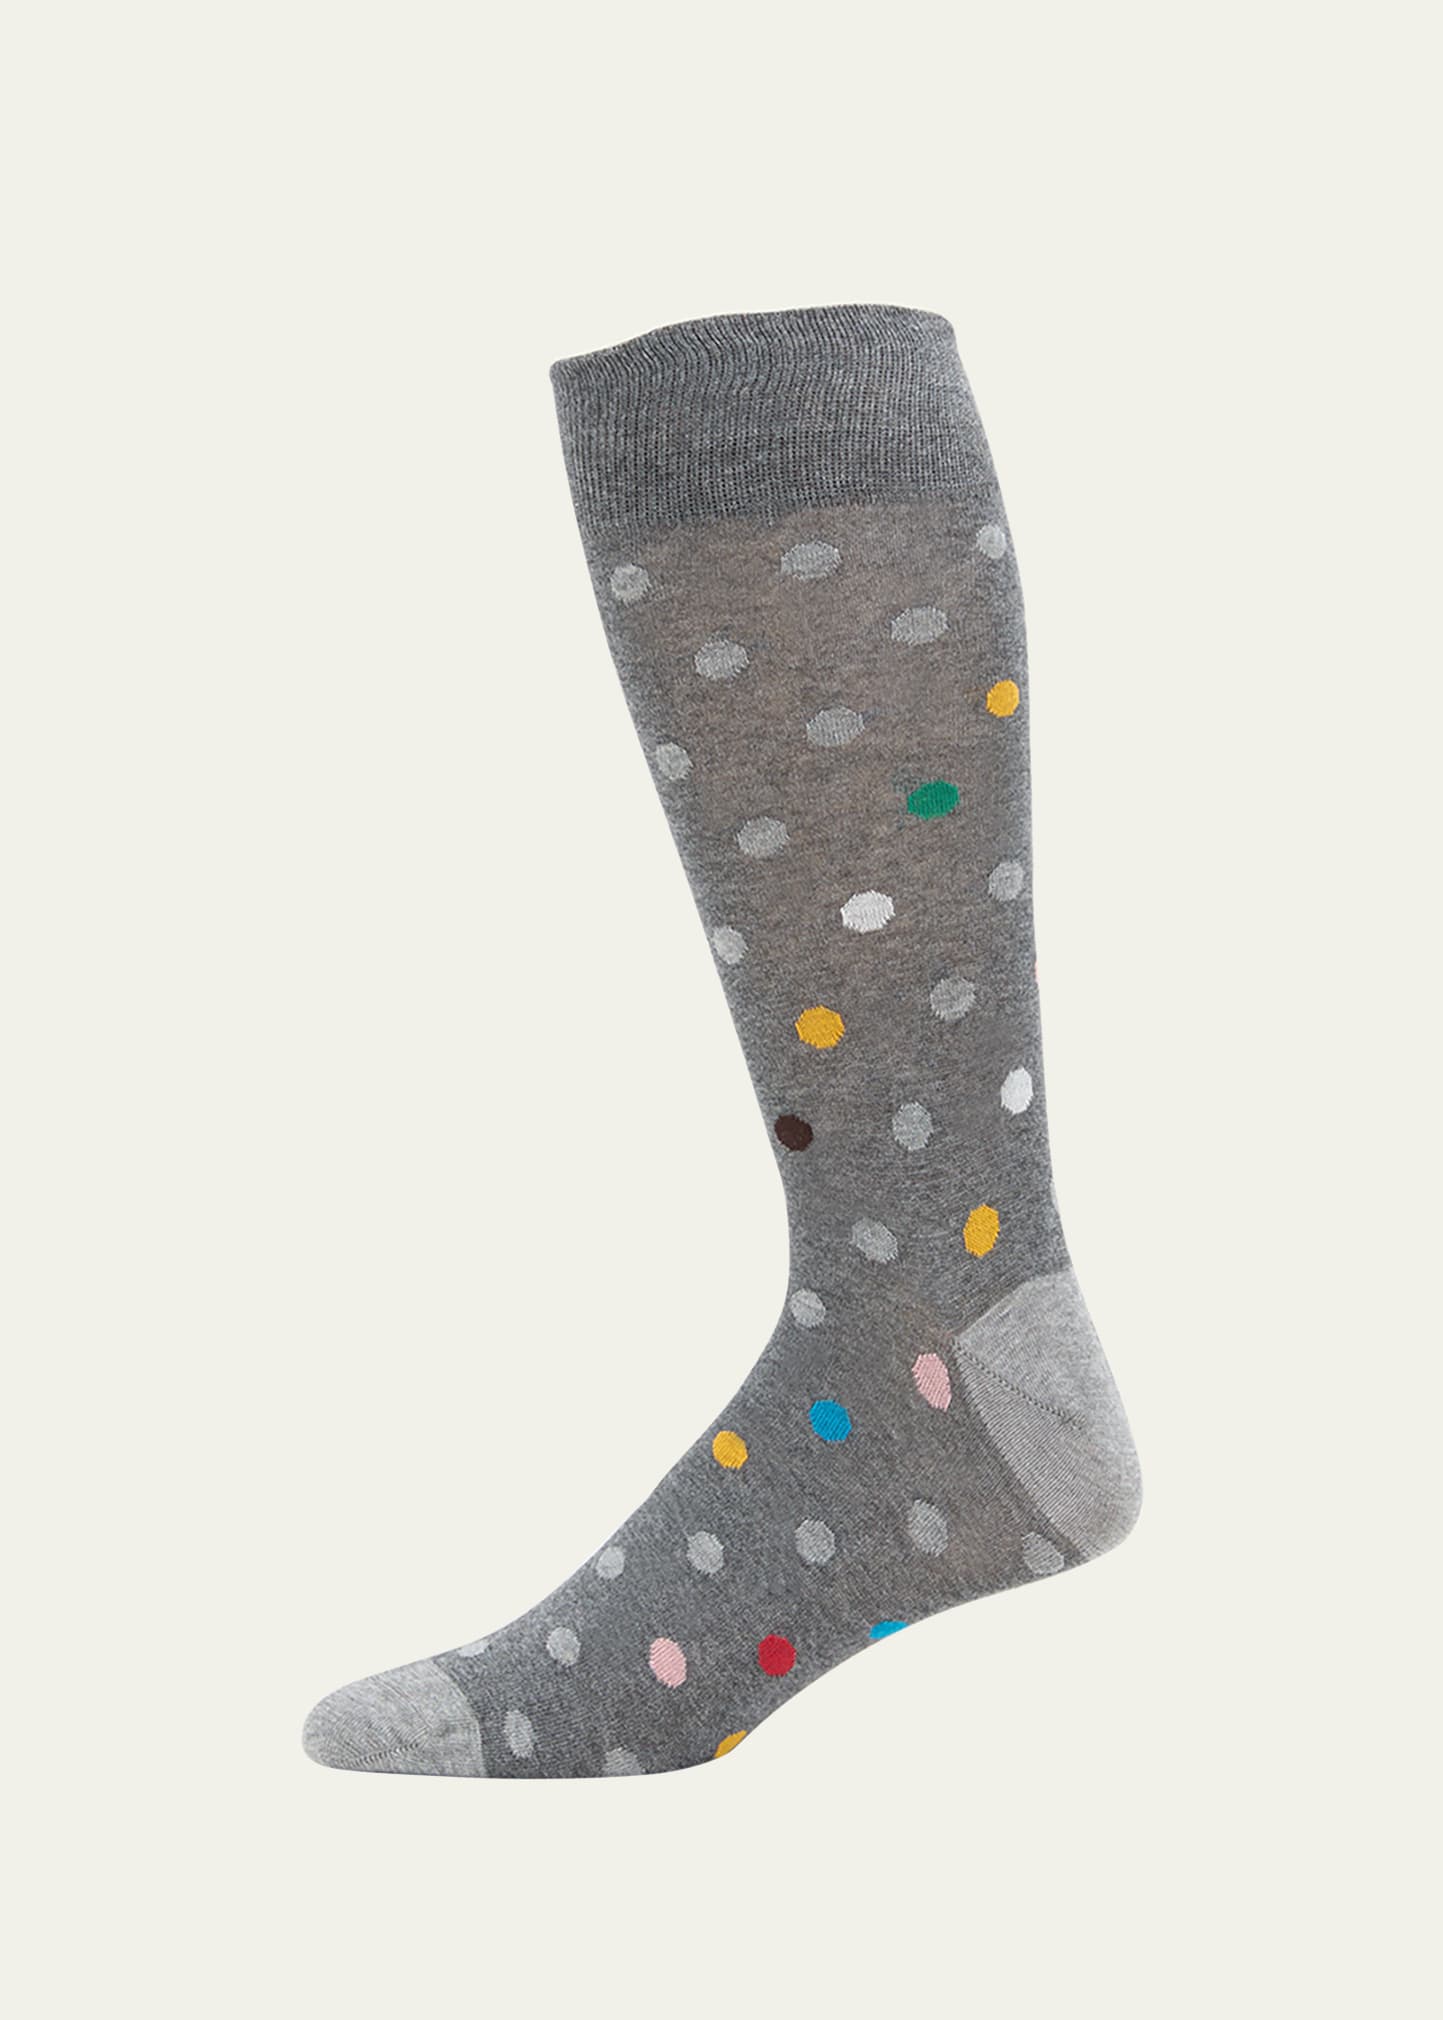 Paul Smith Men's Caleb Spot Crew Socks In Gray